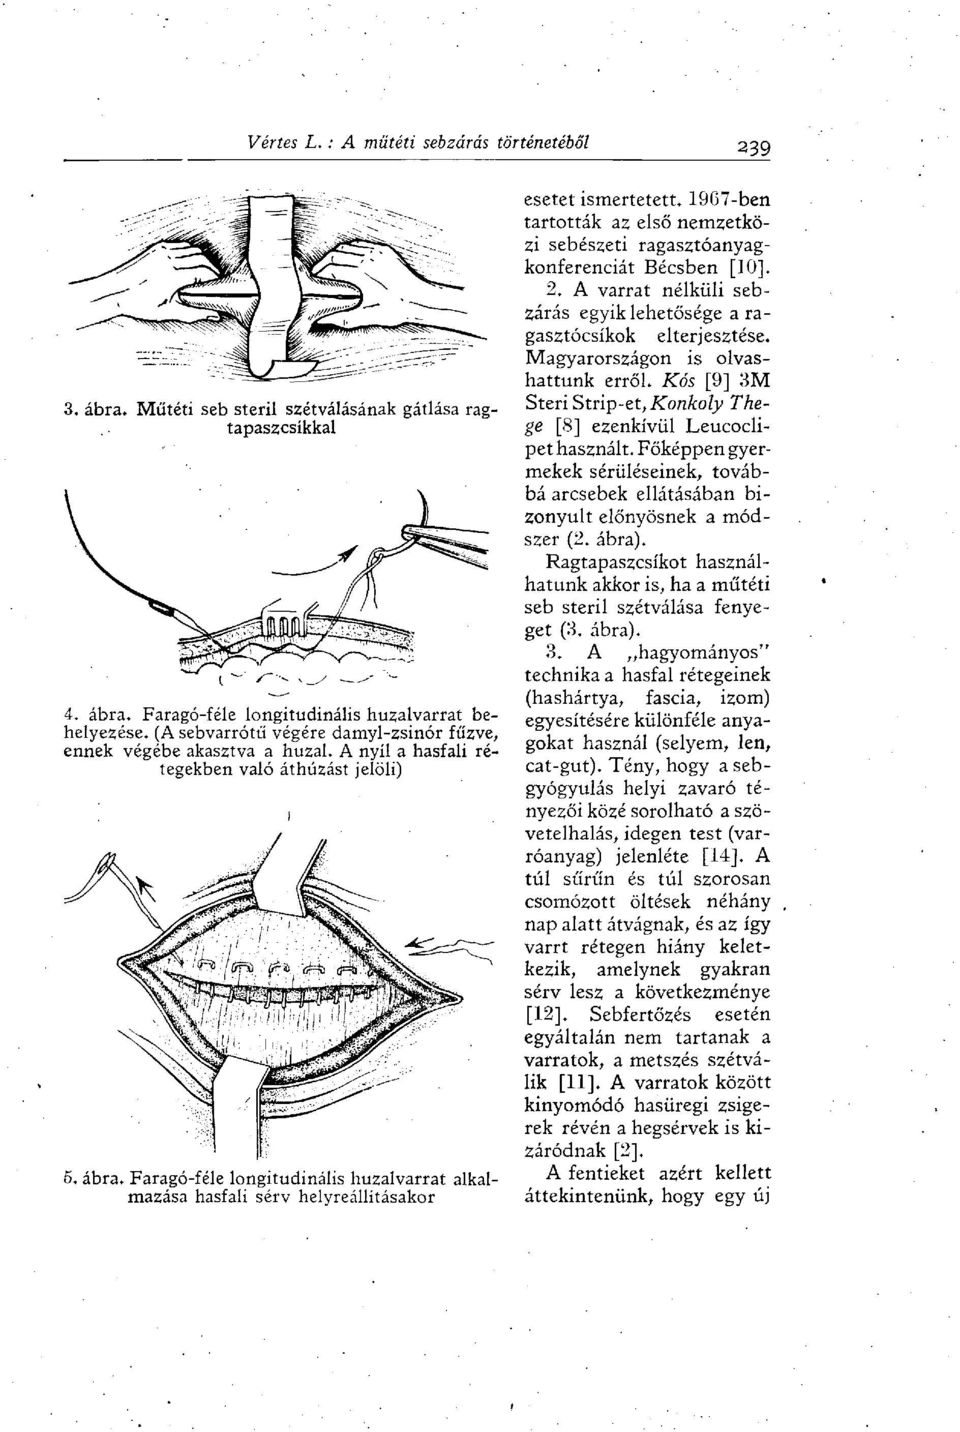 Faragó-féle longitudinális huzalvarrat alkalmazása hasfali sérv helyreállításakor esetet ismertetett. 1907-ben tartották az első nemzetközi sebészeti ragasztóanyagkonferenciát Bécsben [10], 2.